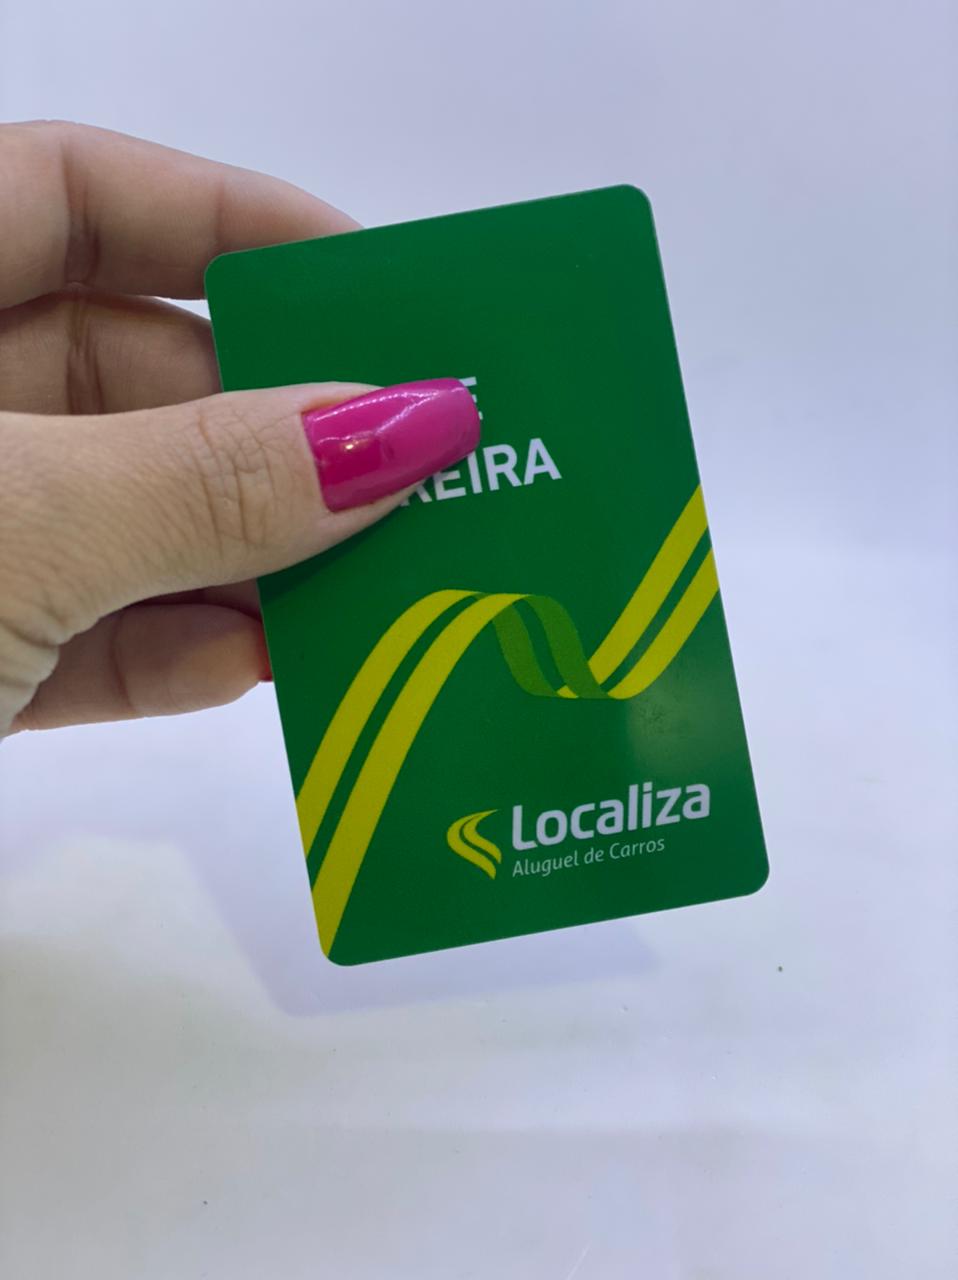 Crachá PVC para sócios de clubes Belo Horizonte - Cardcom Crachá, Cartão e  Carteirinha em PVC